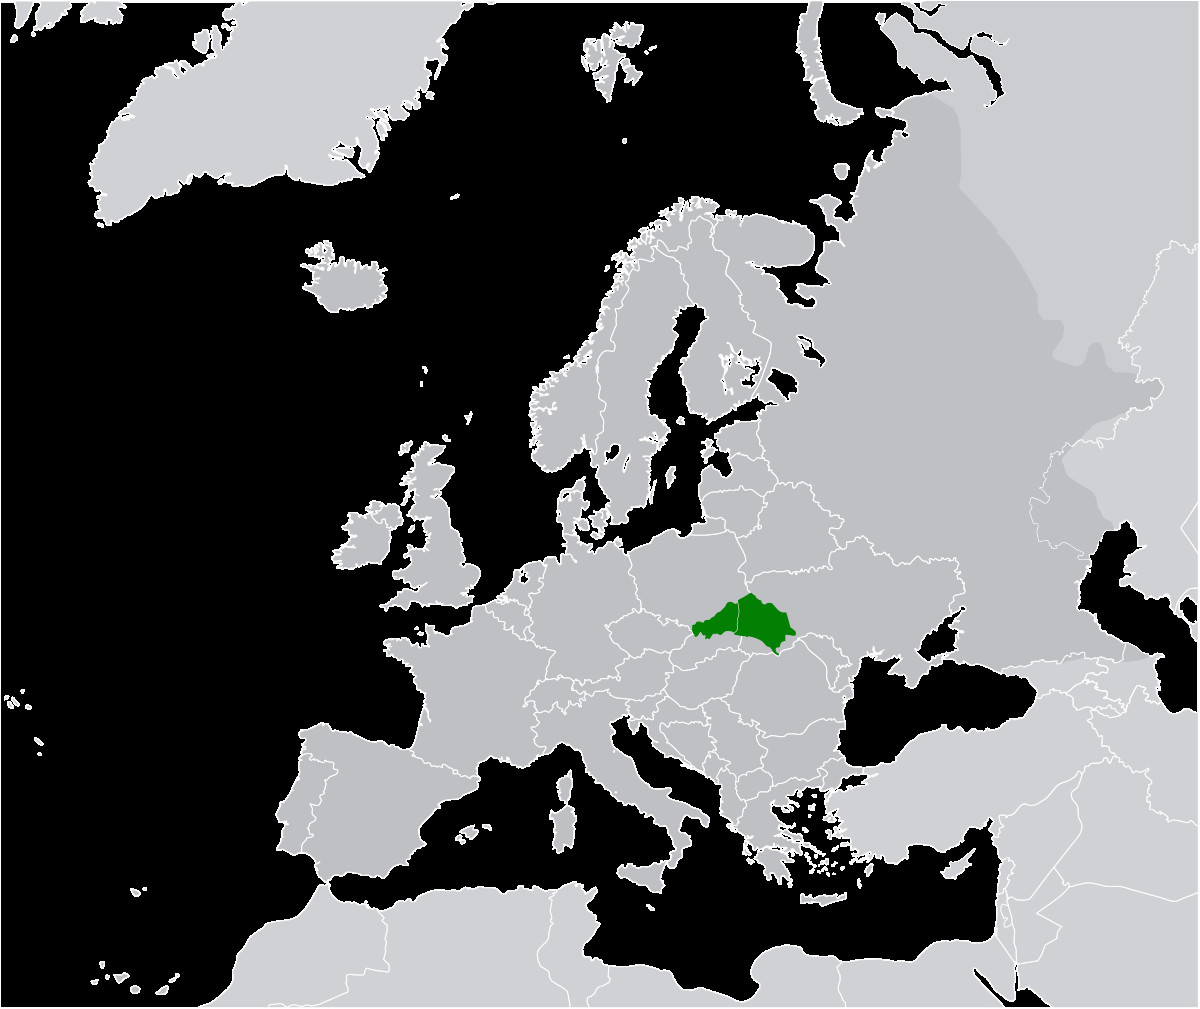 galicia eastern europe wikipedia